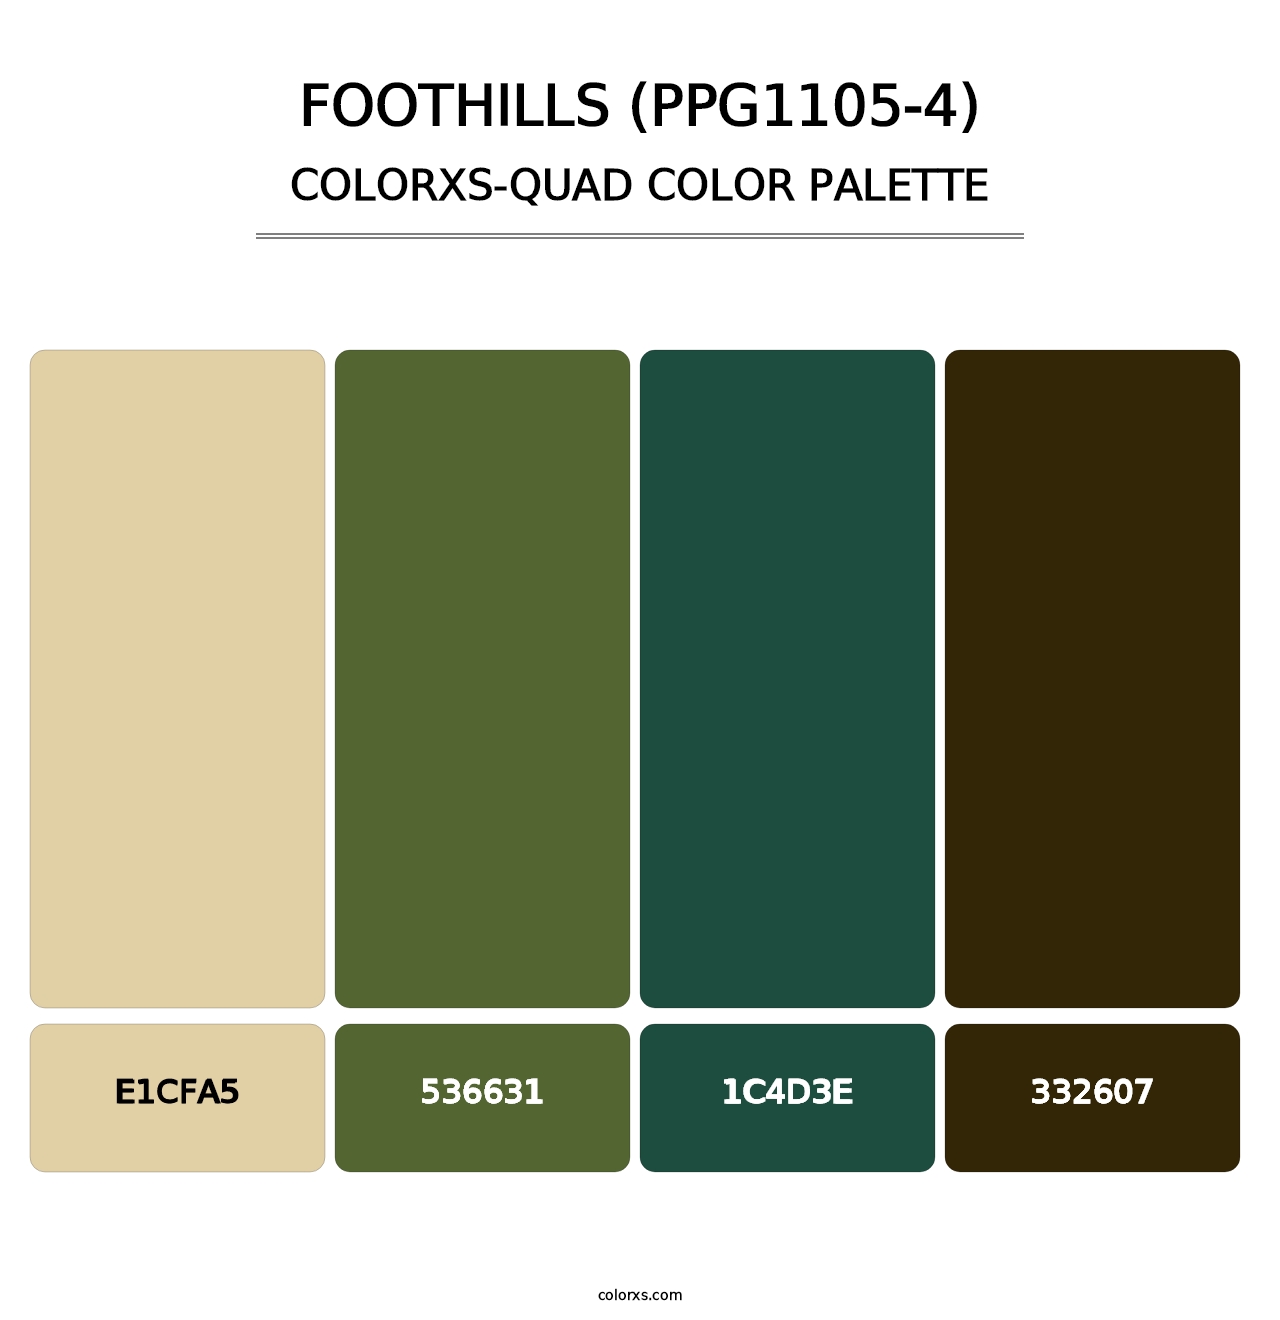 Foothills (PPG1105-4) - Colorxs Quad Palette